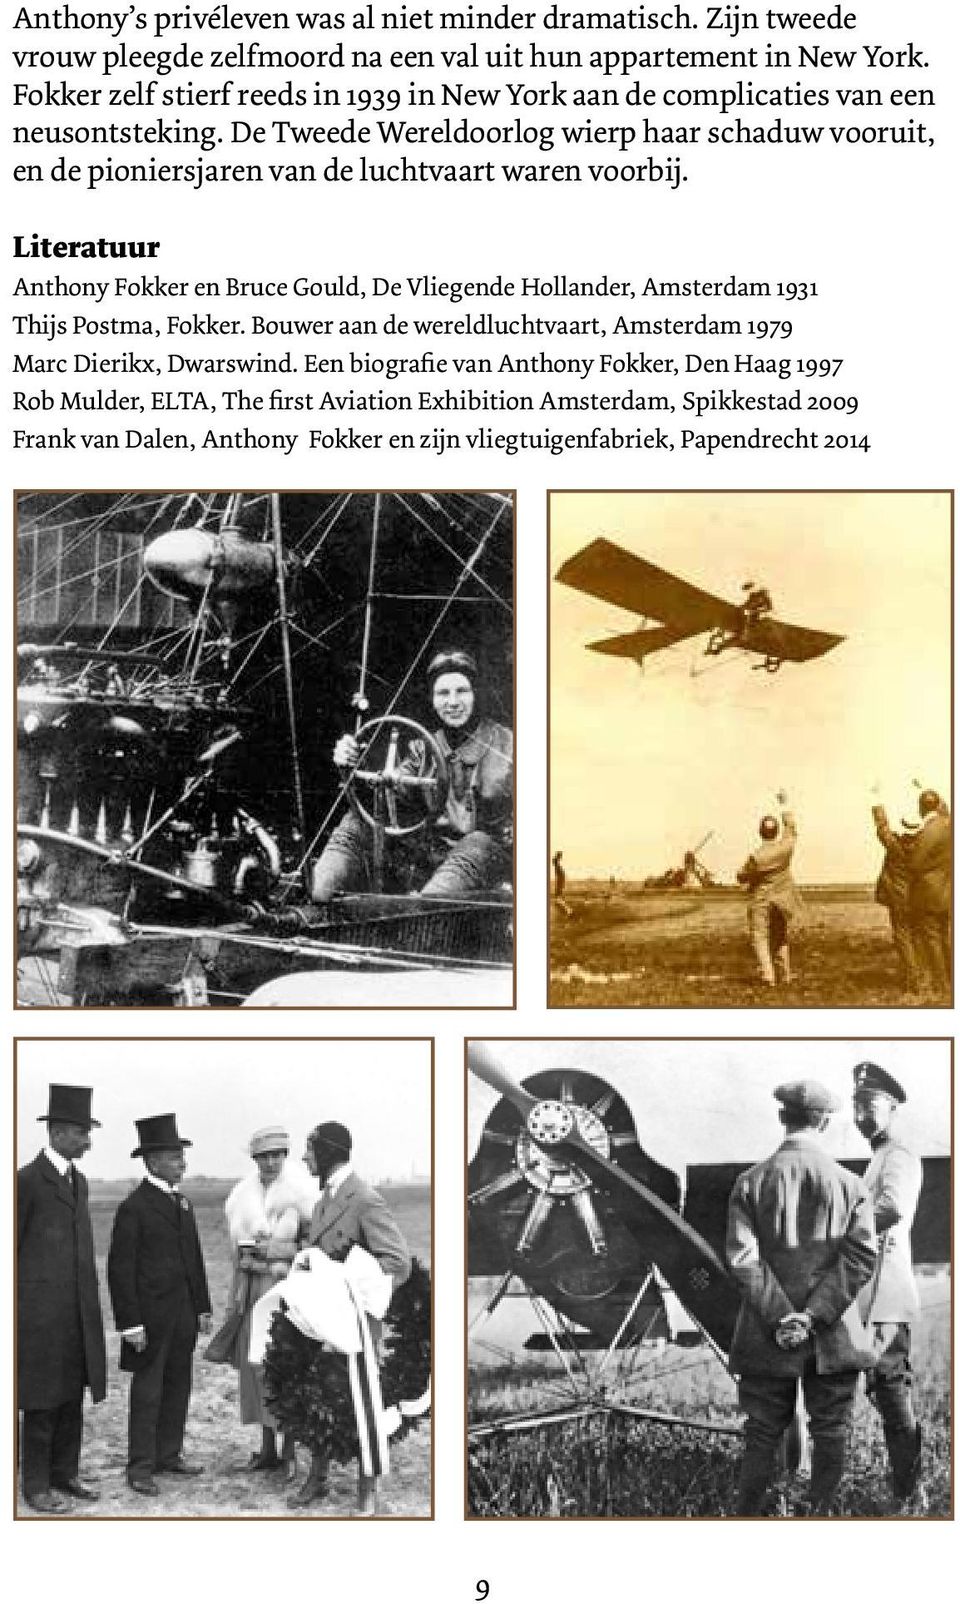 De Tweede Wereldoorlog wierp haar schaduw vooruit, en de pioniersjaren van de luchtvaart waren voorbij.